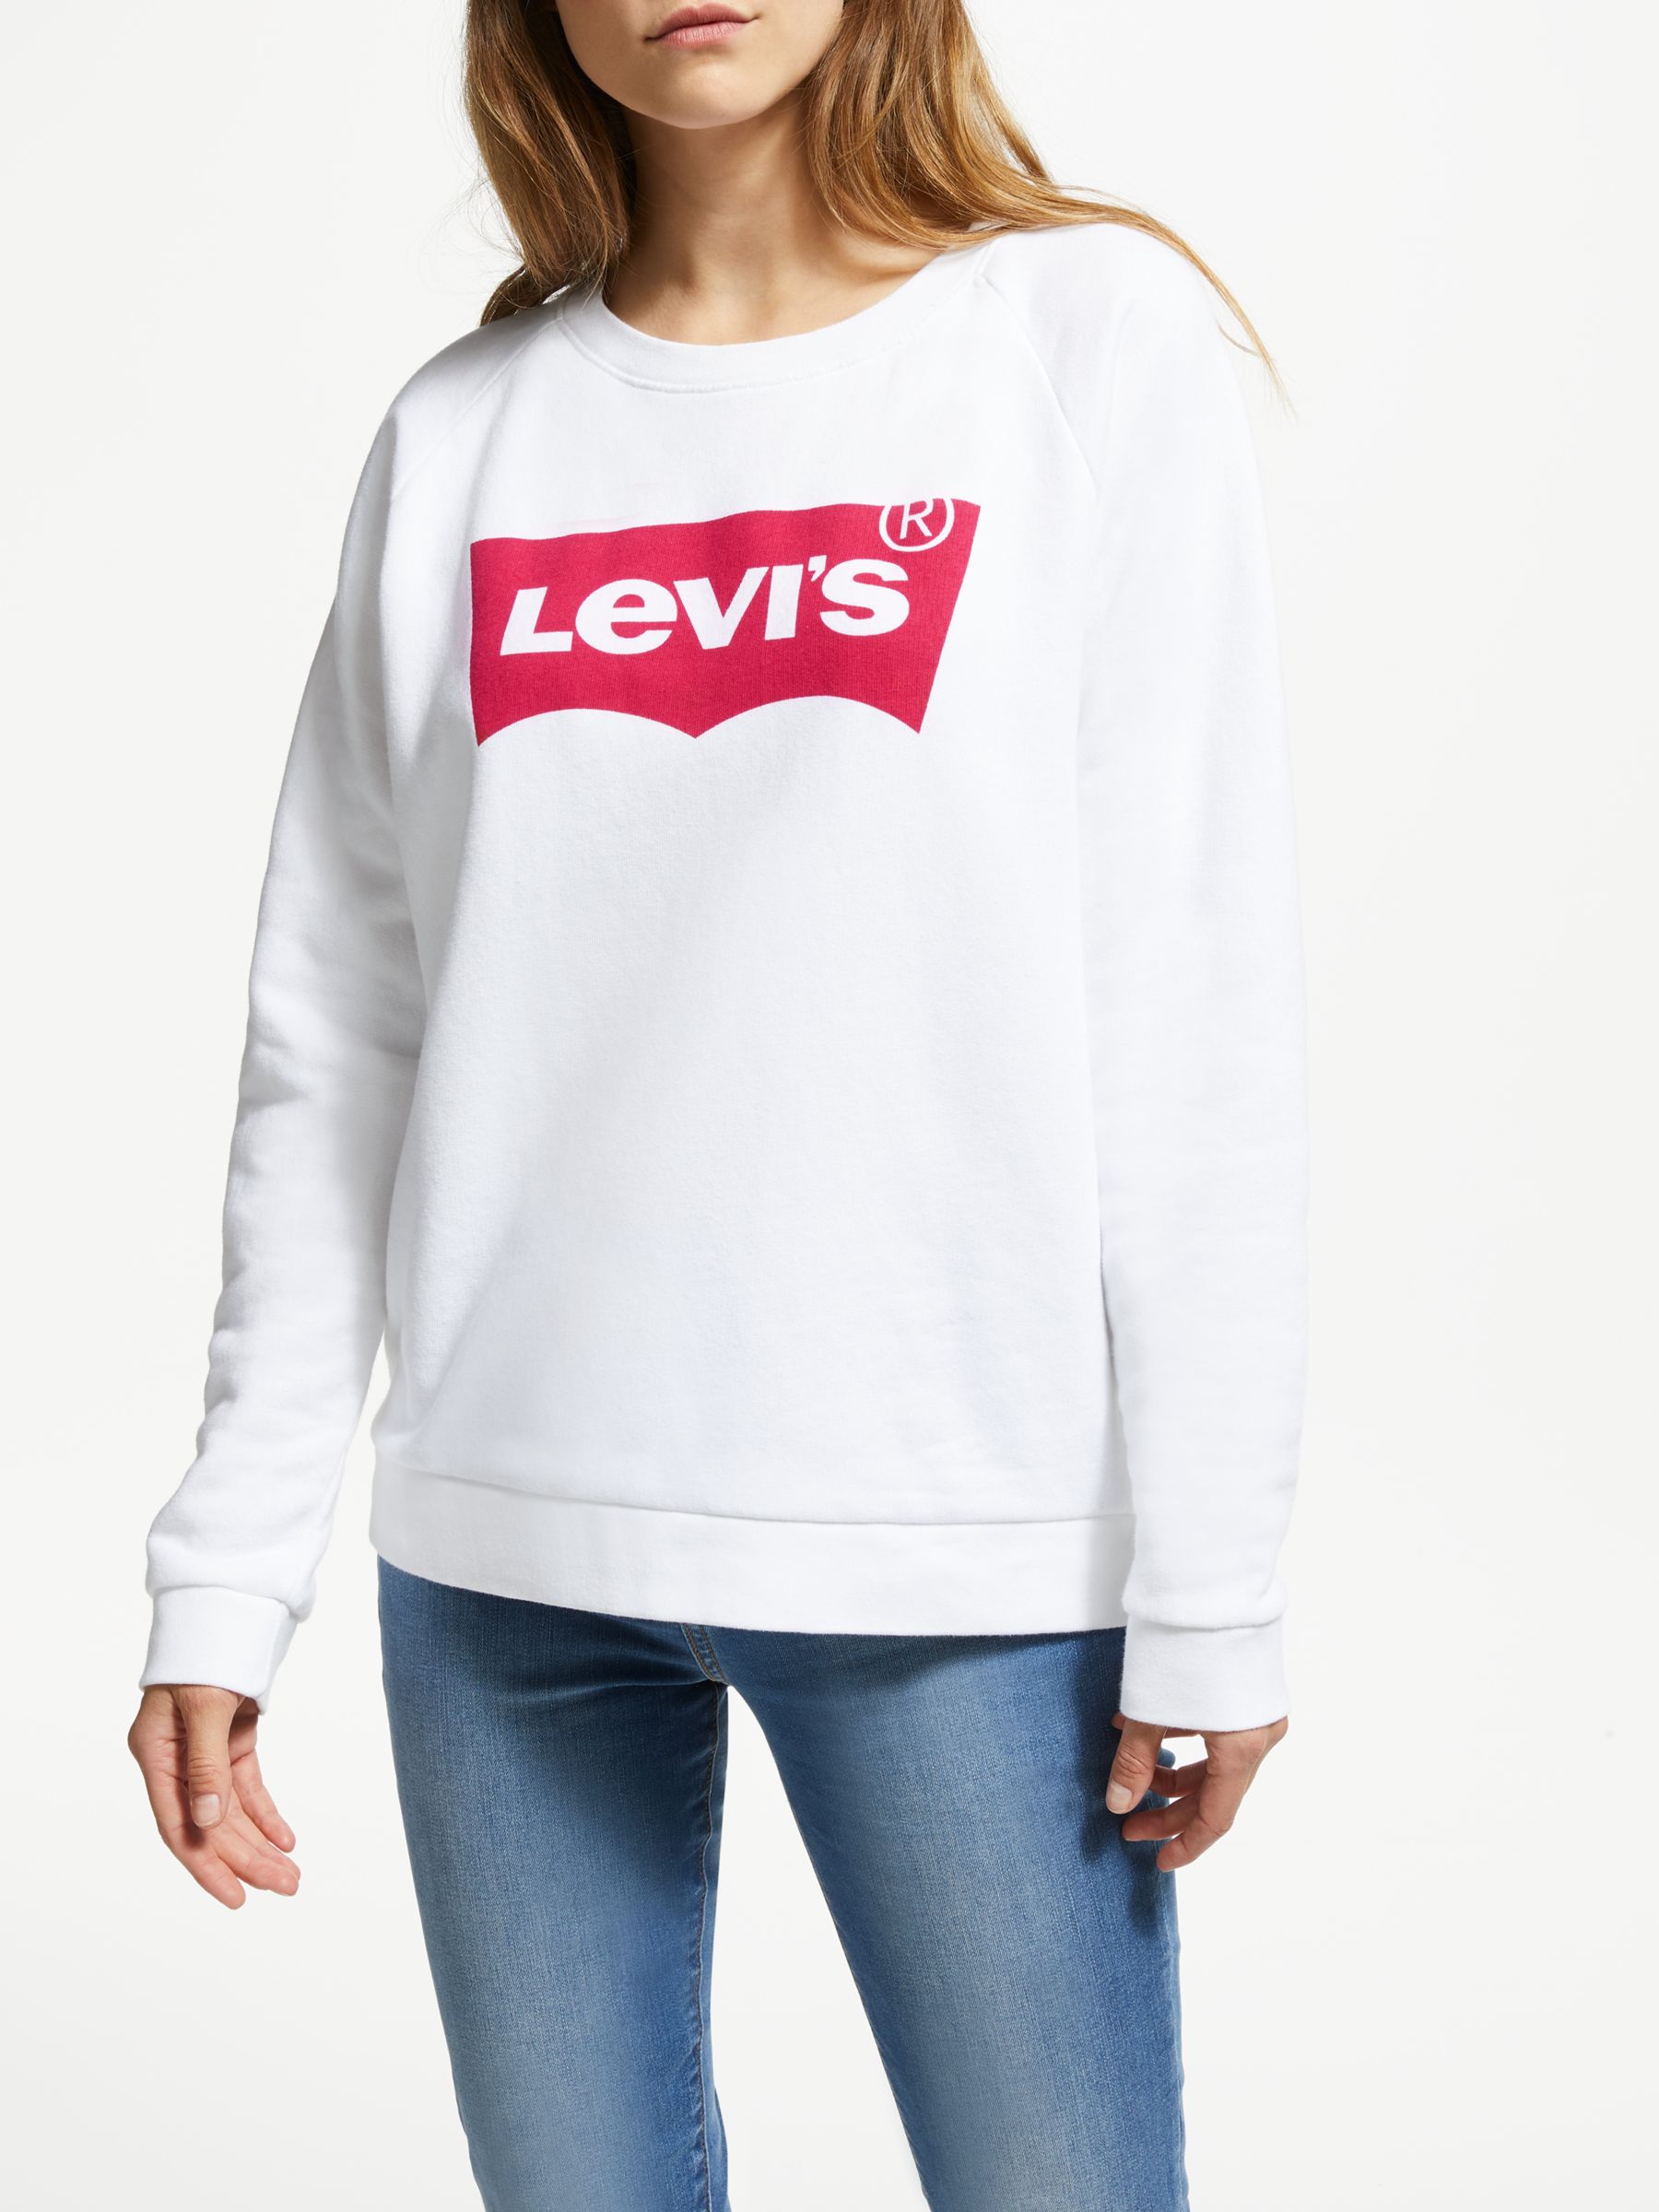 graphic sweatshirts womens